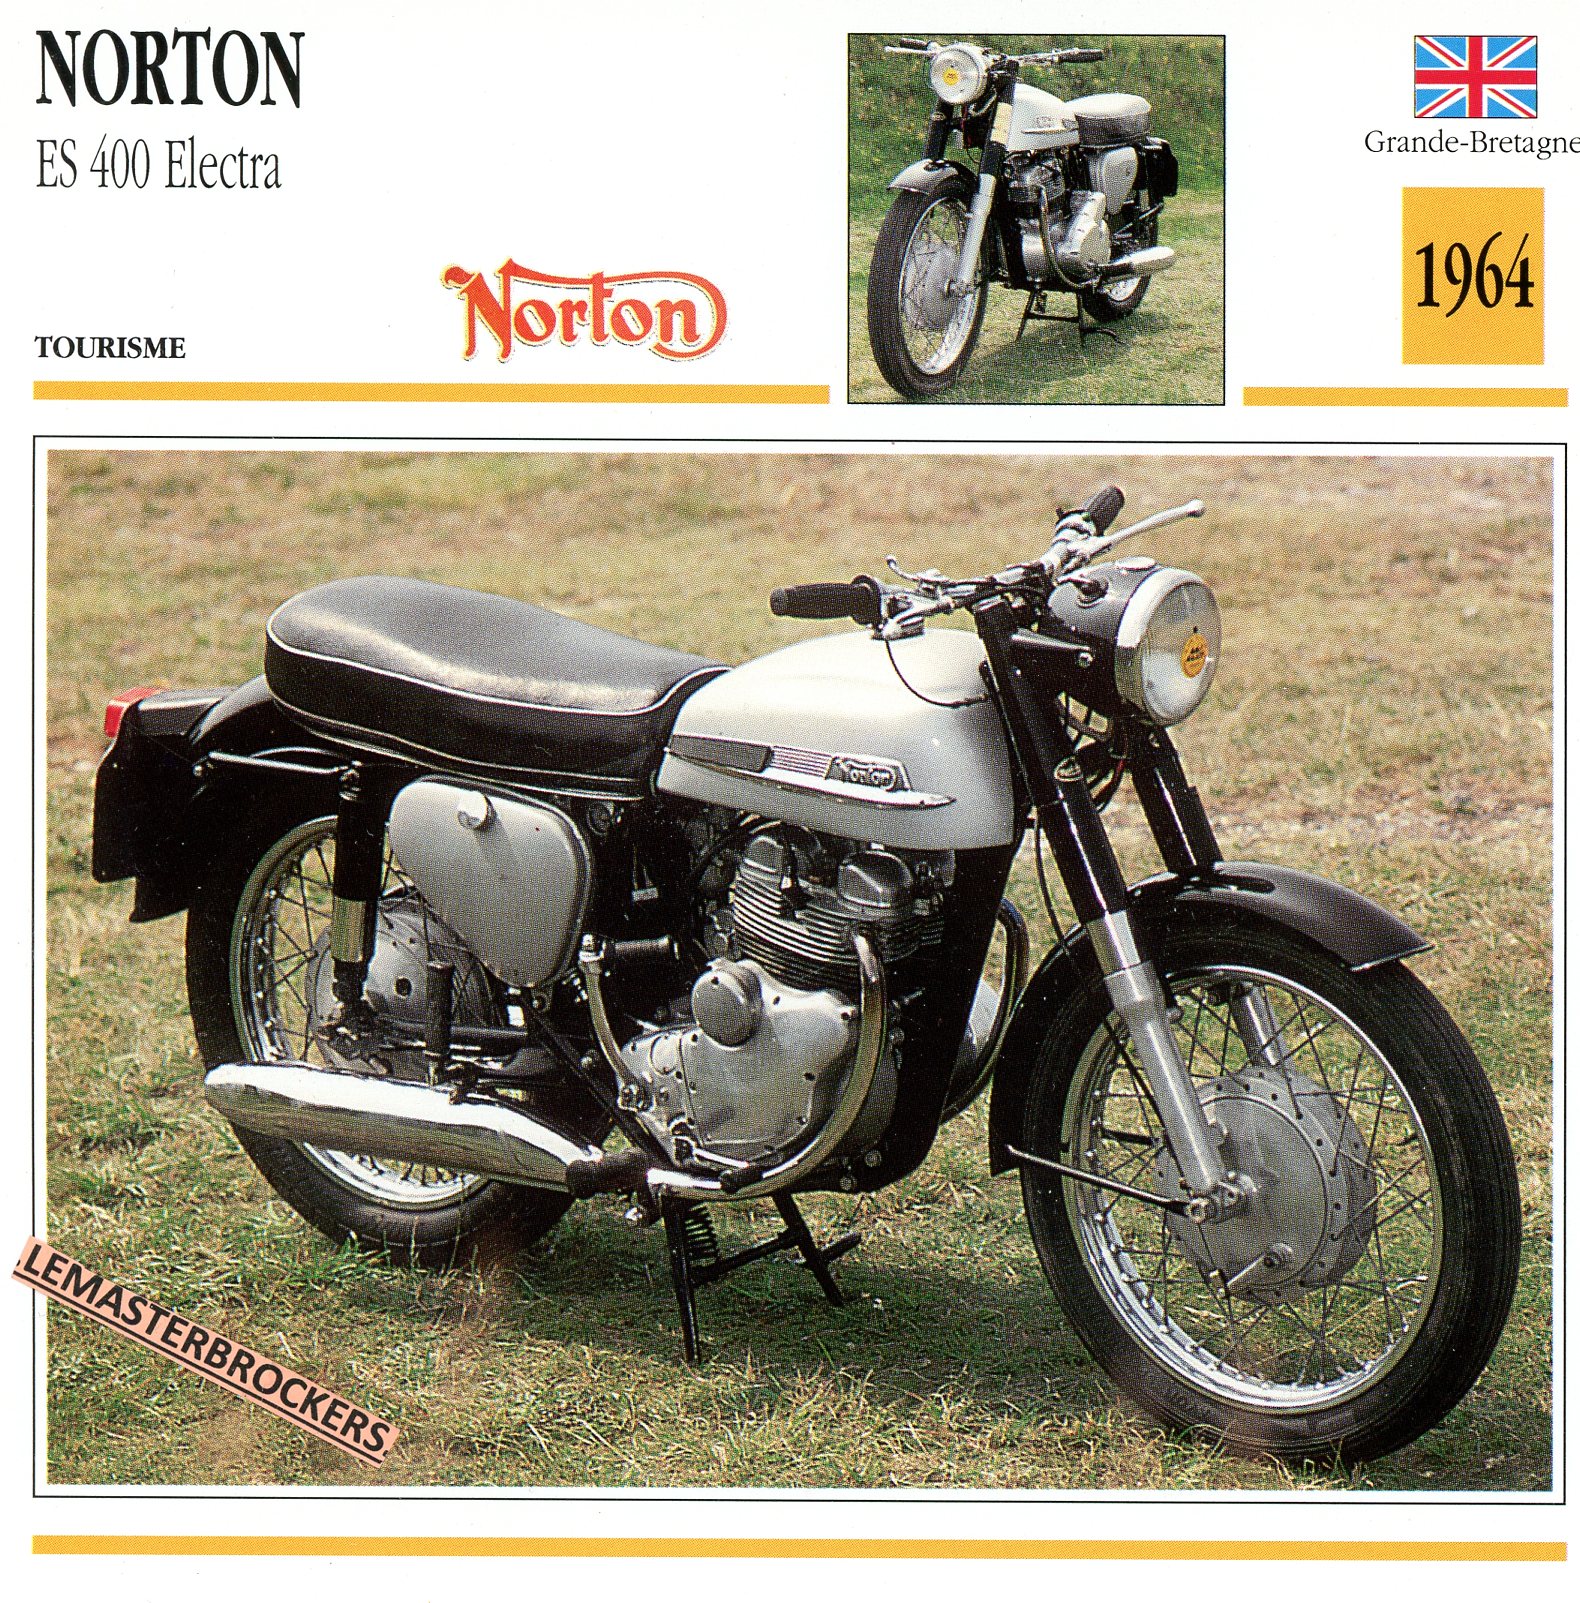 NORTON-ES400-ELECTRA-FICHE-MOTO-ATLAS-lemasterbrockers-CARD-MOTORCYCLE